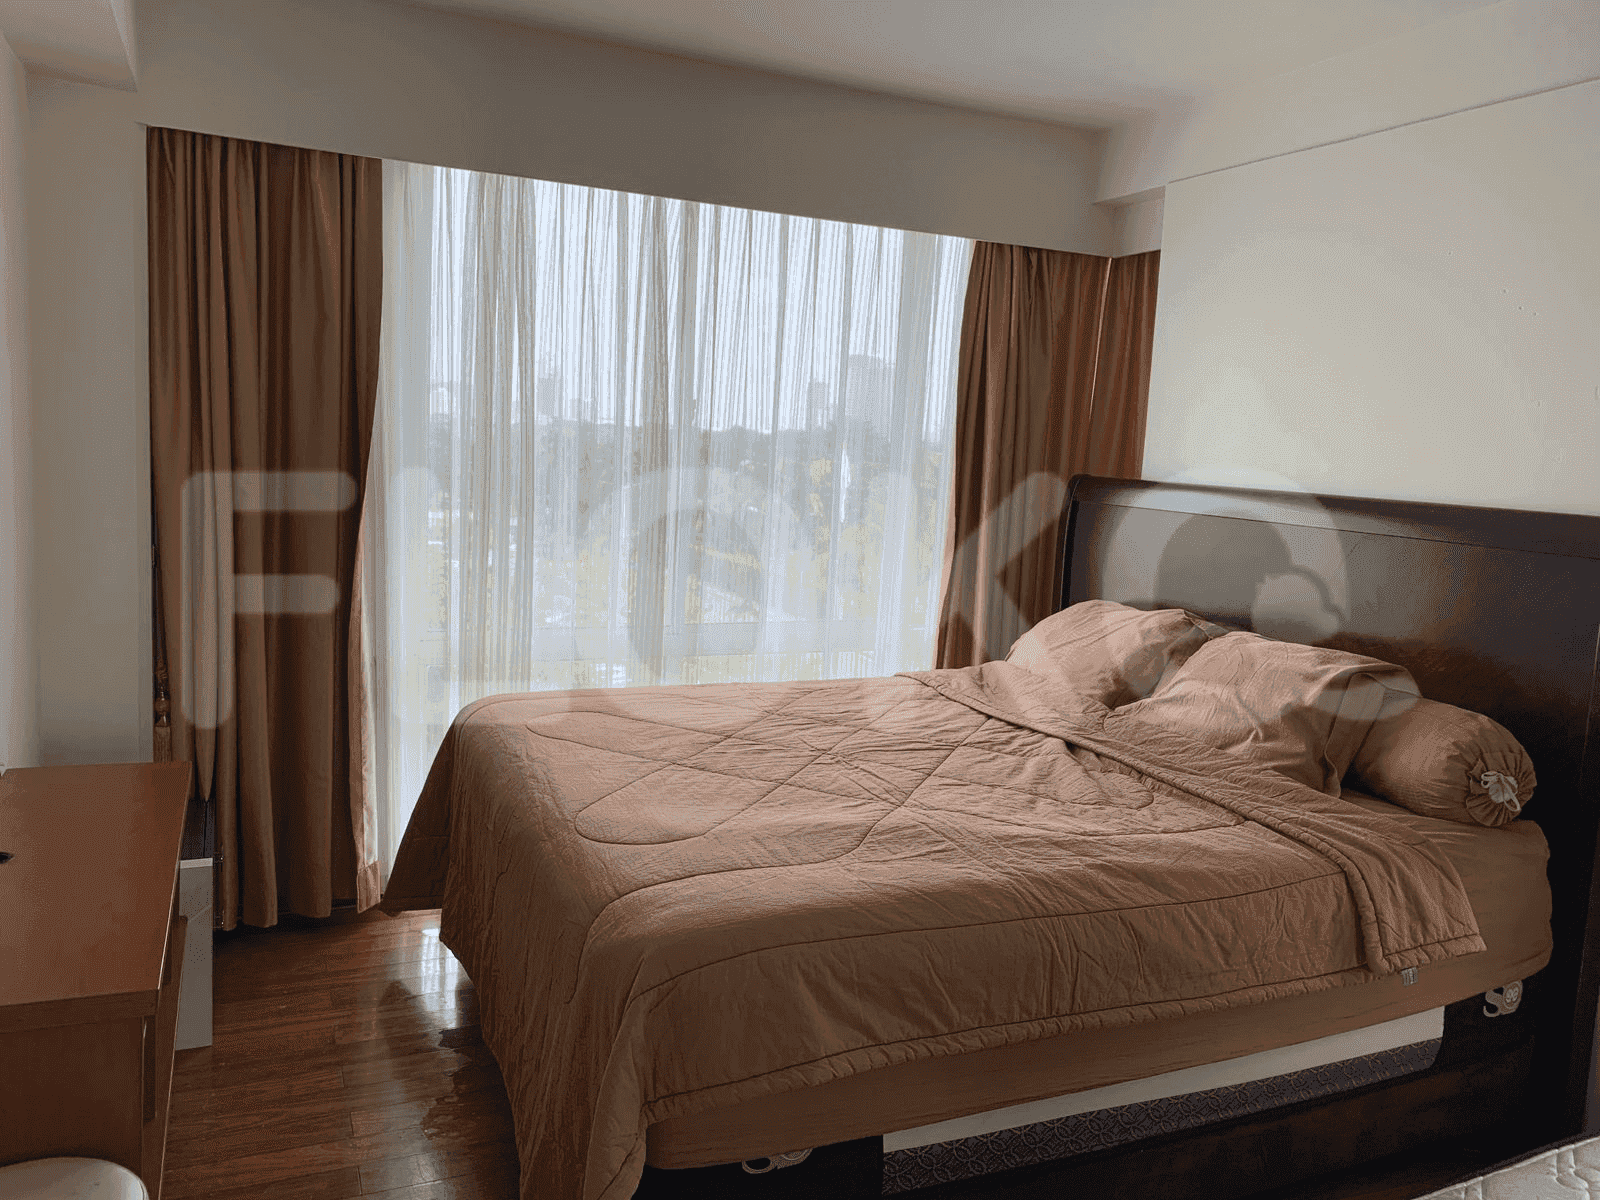 3 Bedroom on 6th Floor for Rent in Puri Casablanca - fte00c 4